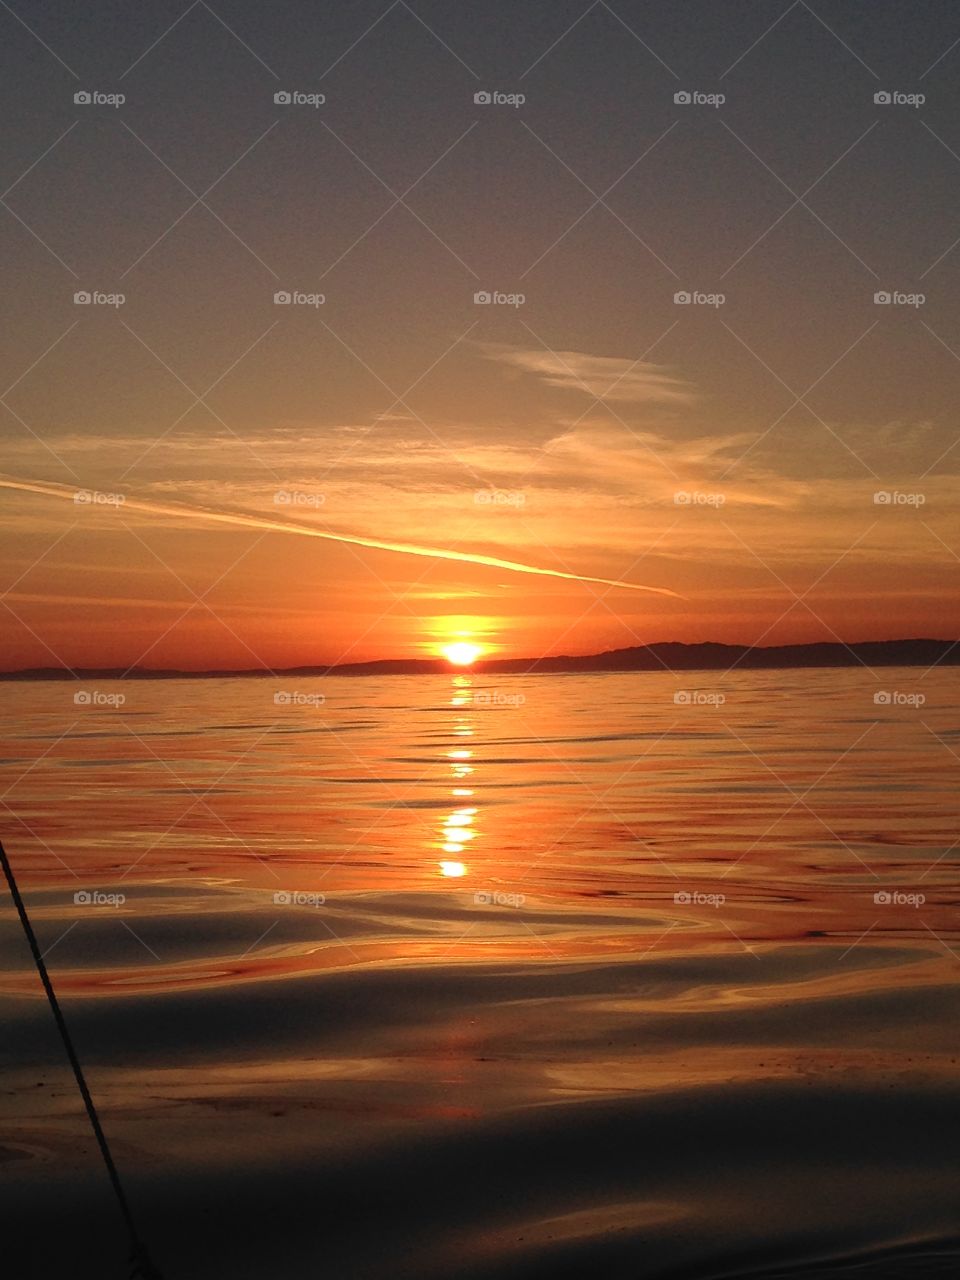 Fishermans delight sunset.